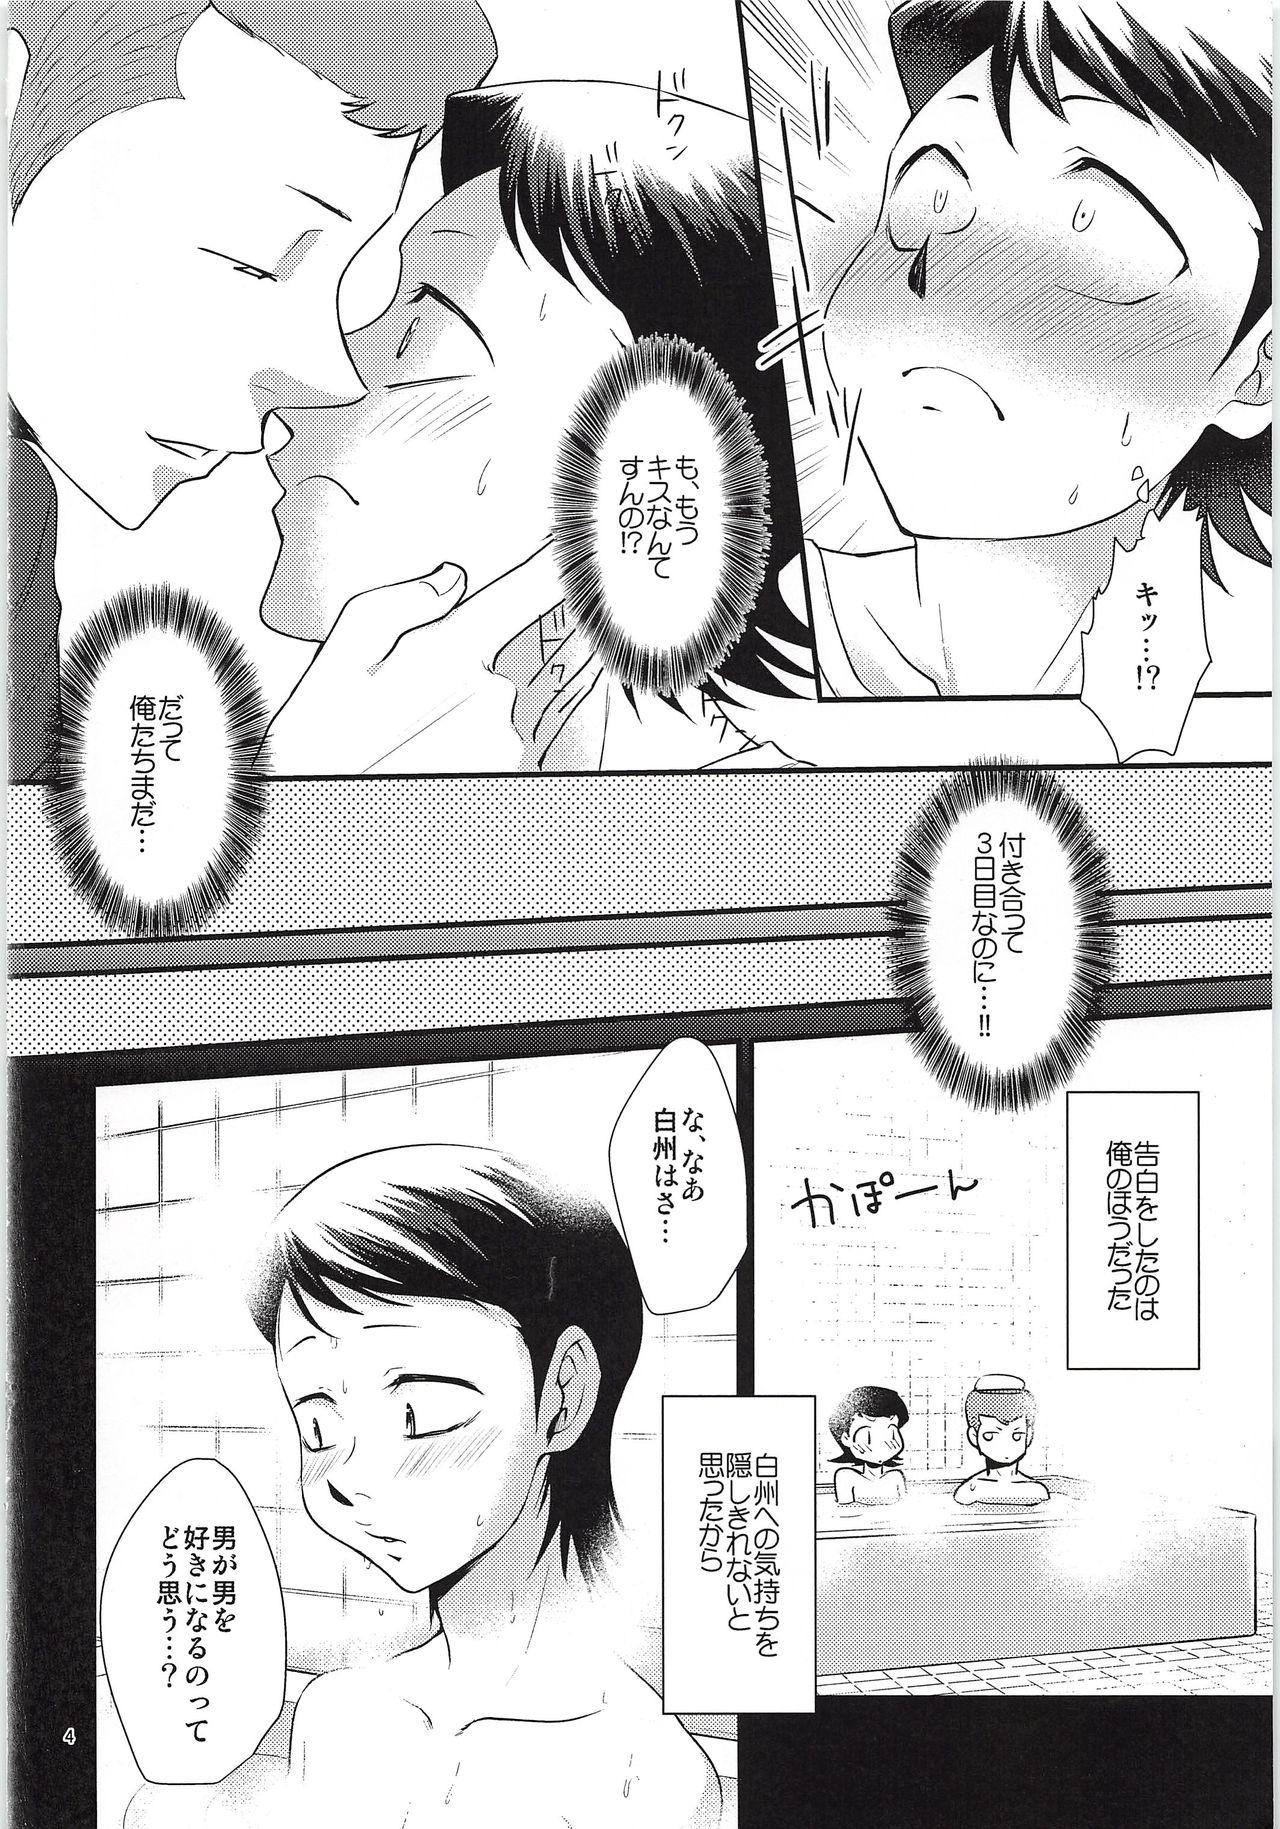 Ass Lick Tsukiatte 3 Nichimenanoni Kareshi ga Guigui Semetekuru Ken - Daiya no ace From - Page 3